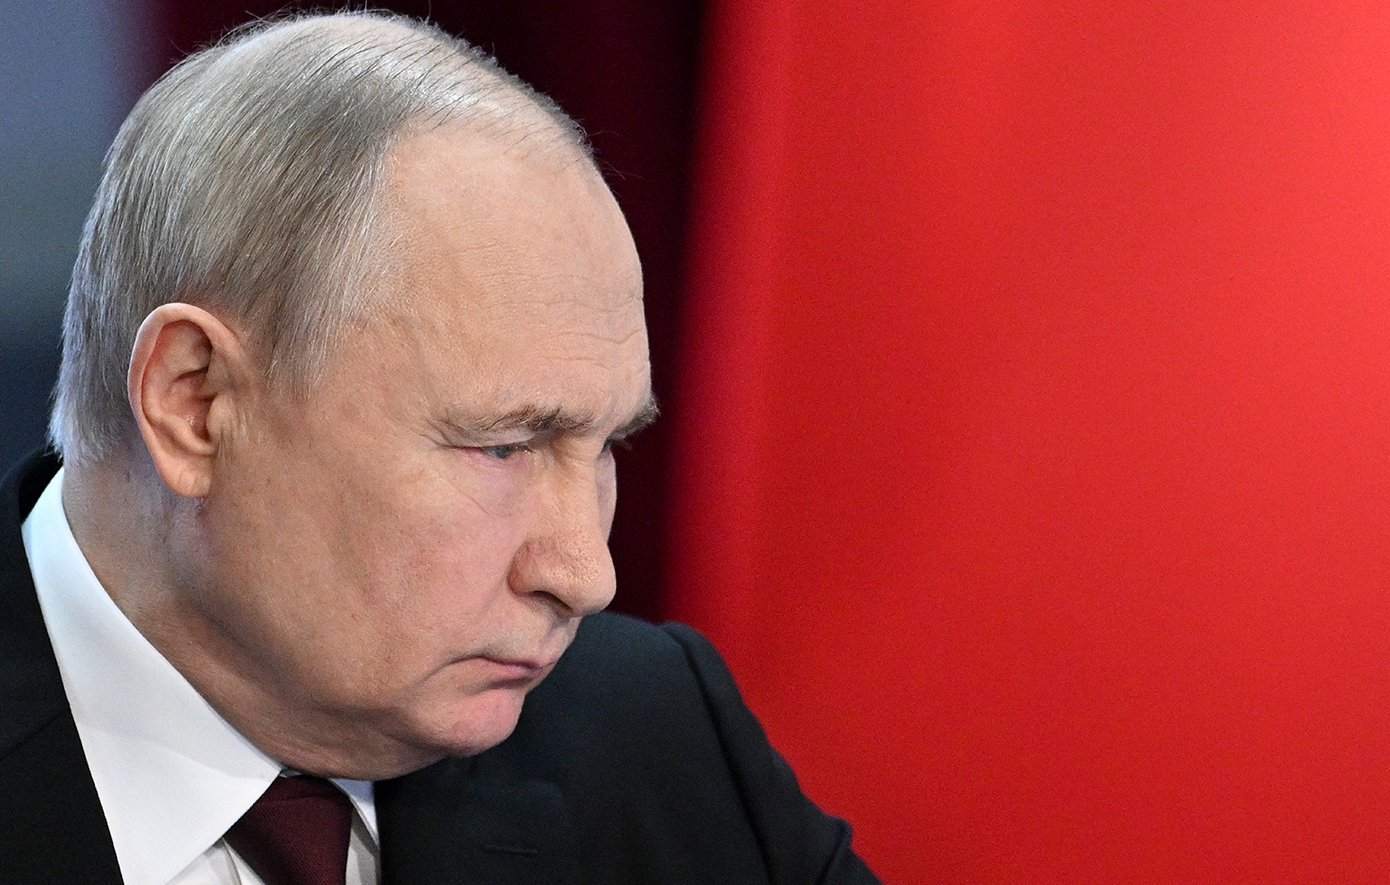 Ο πρόεδρος Πούτιν επιβεβαίωσε τη δομή της νέας ρωσικής κυβέρνησης